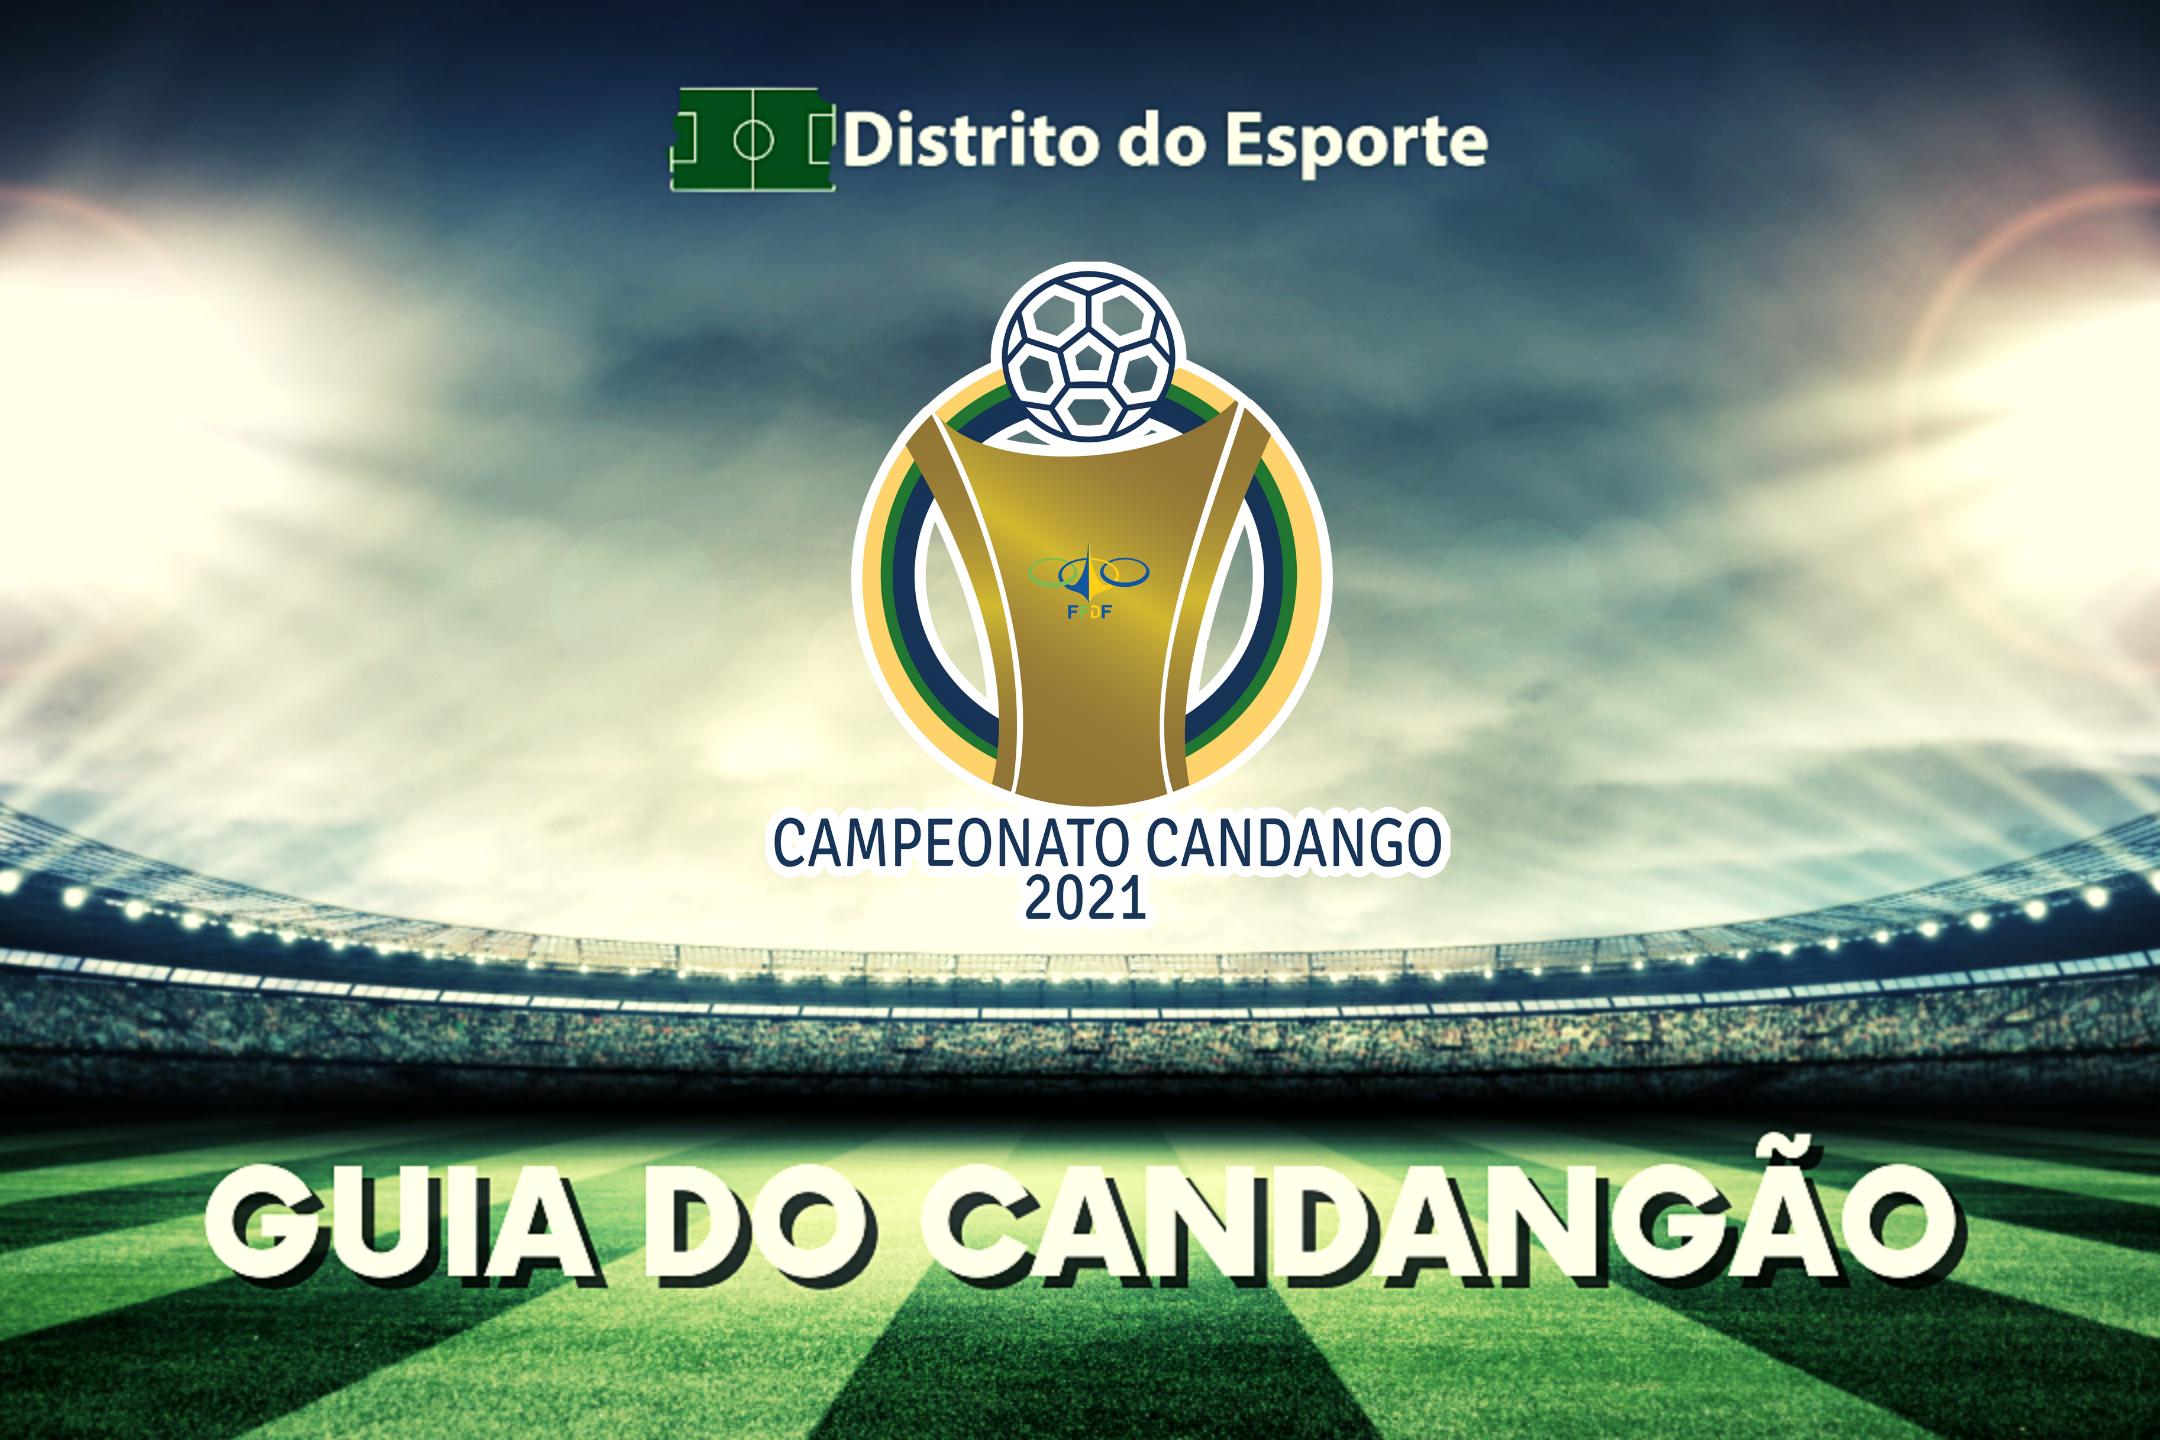 Guia da Segunda Divisão do Campeonato Candango 2023